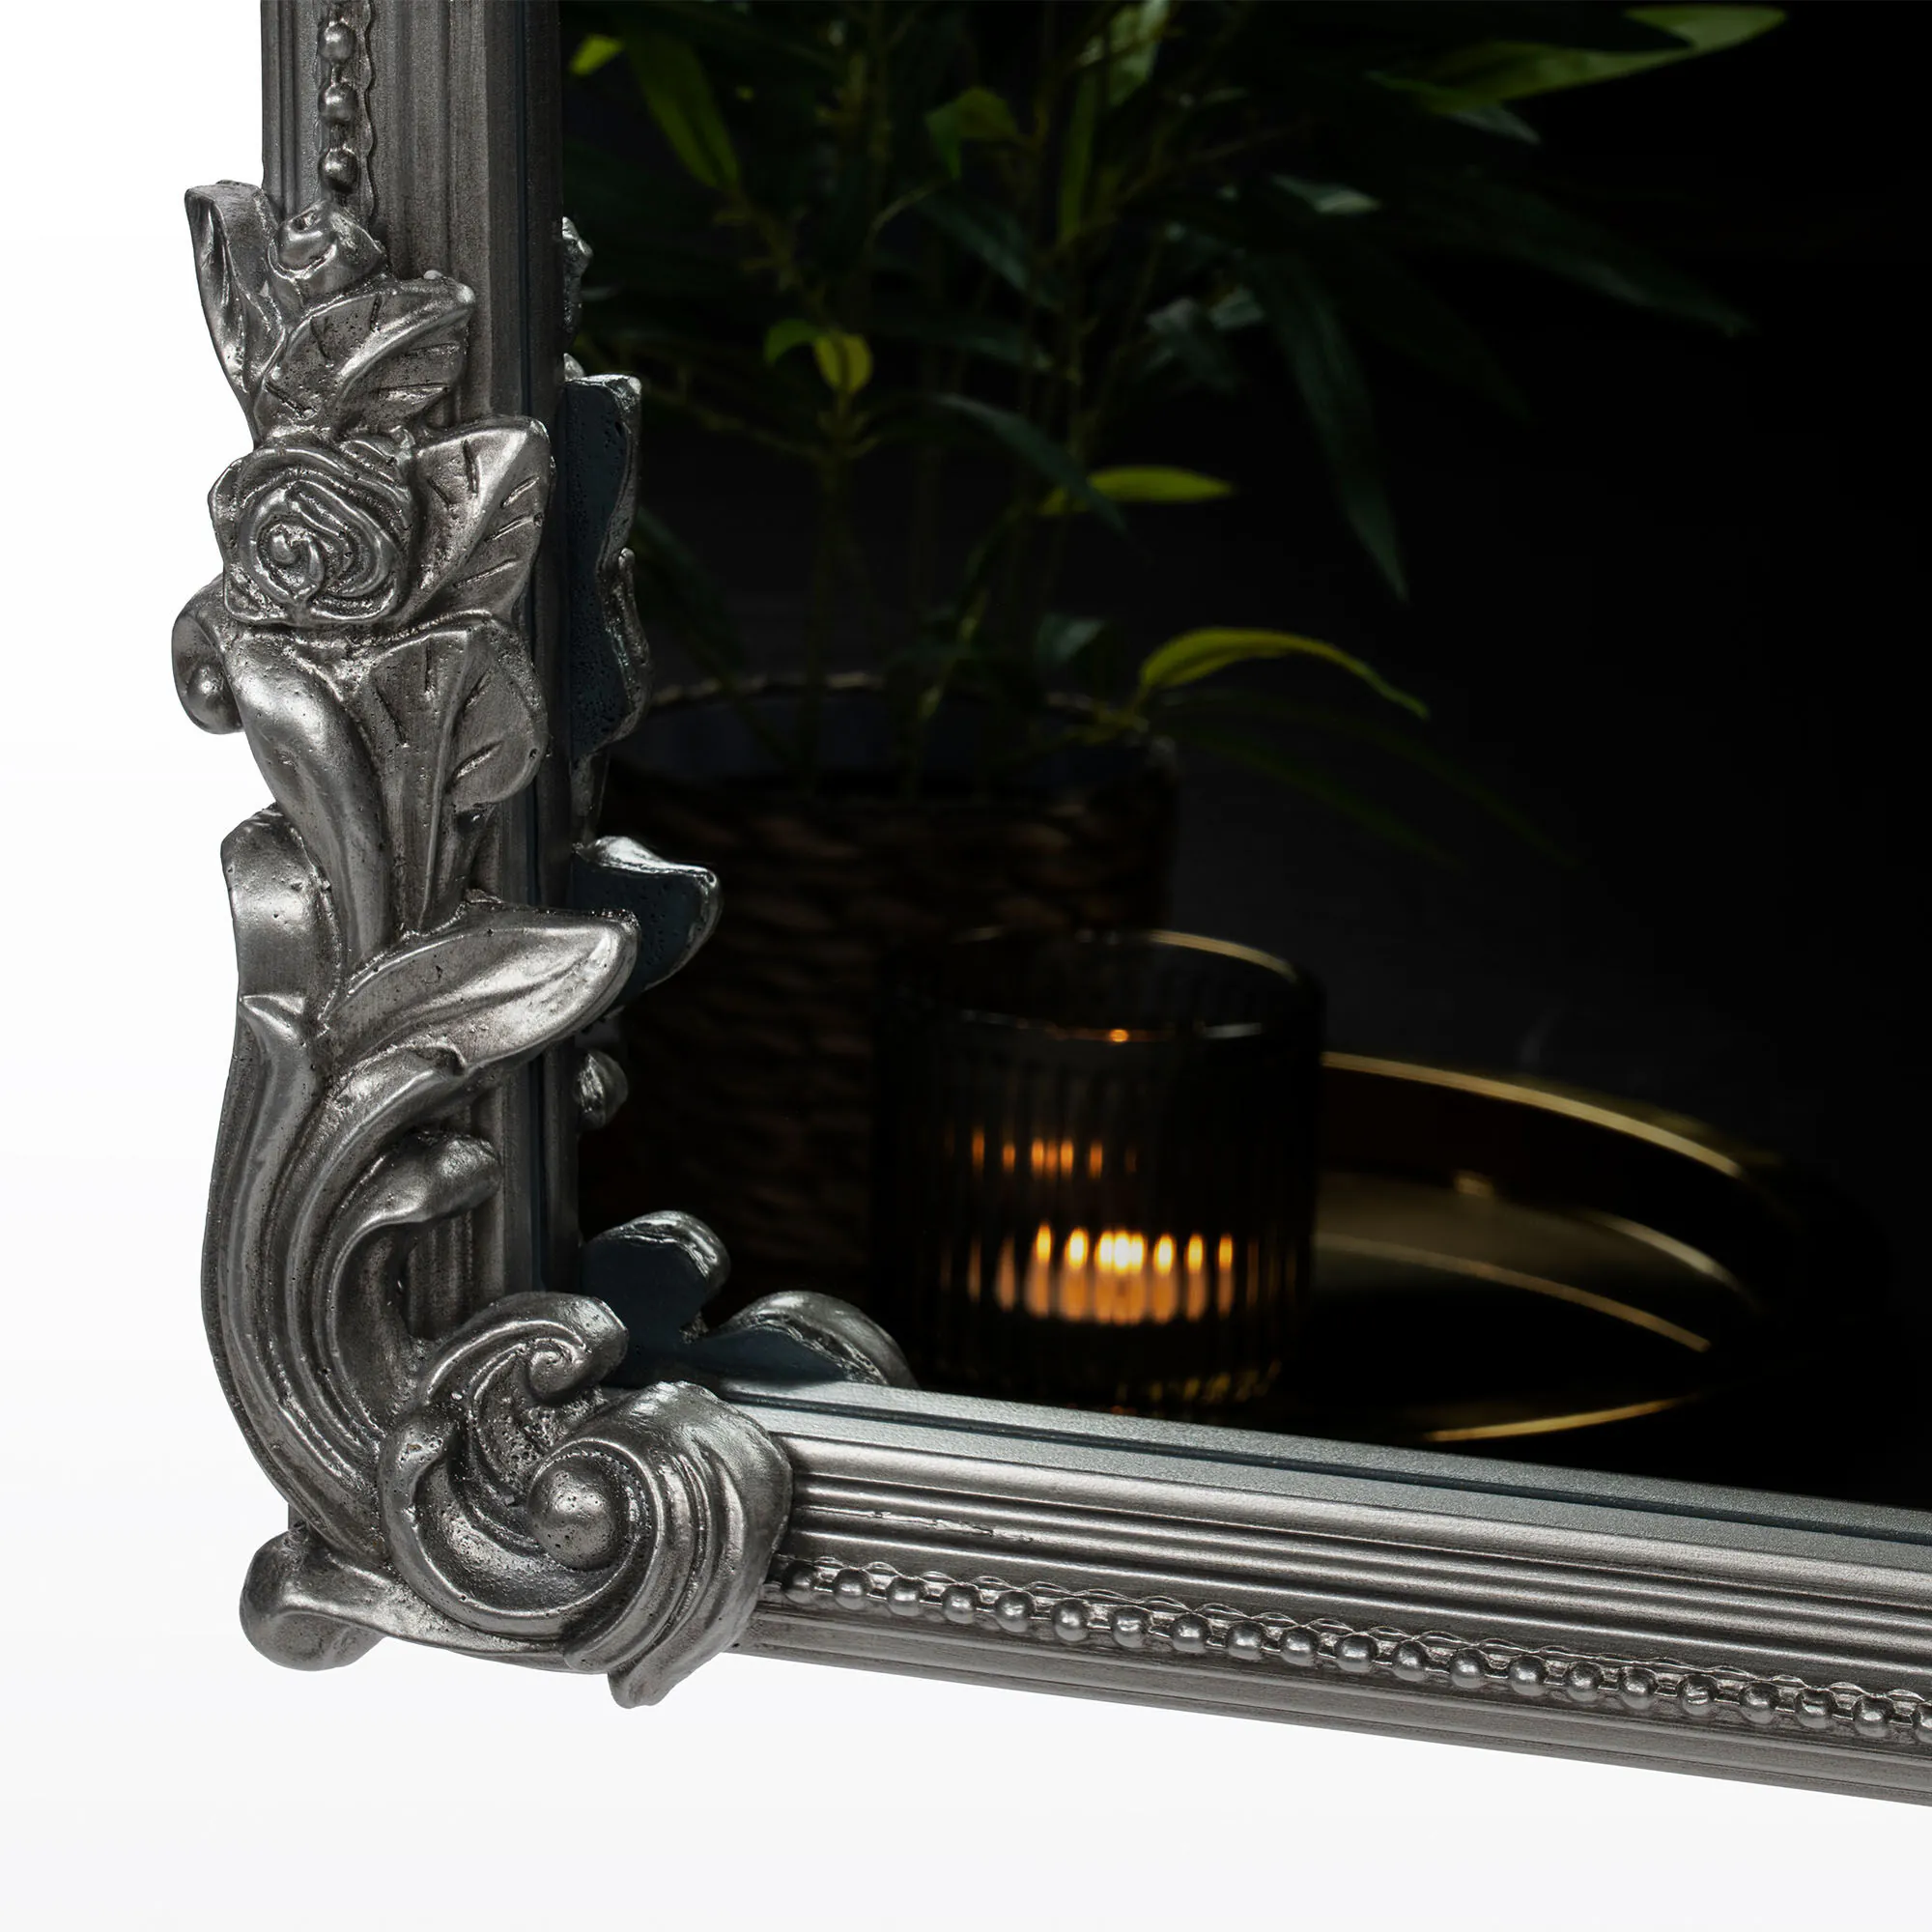 Helkroppsspegel 100x180cm Valvformad Silver Mary